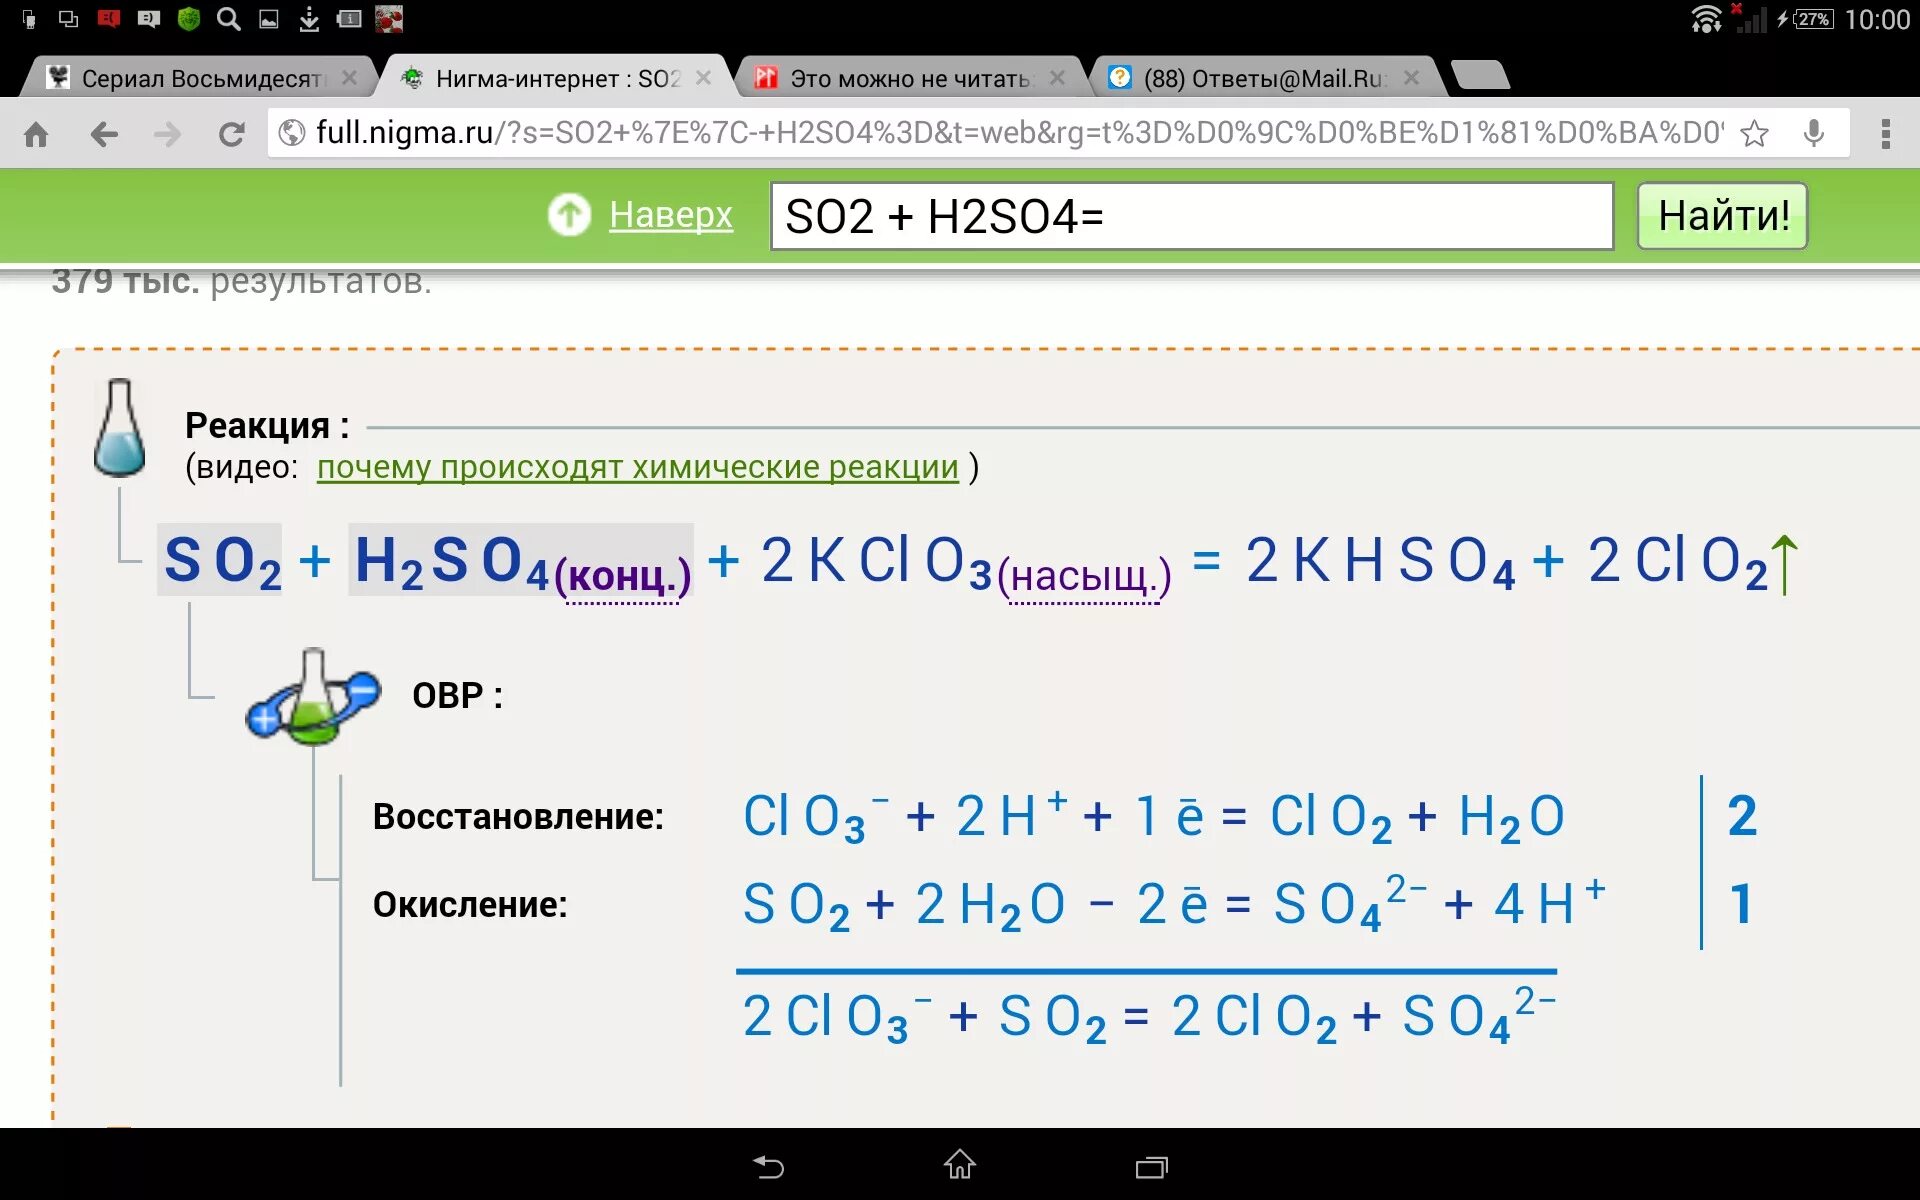 S x h2so4. So2 h2so4. S h2so4 so2. S+h2so4 конц so2+h2o. S=h2so4=so2+h2).